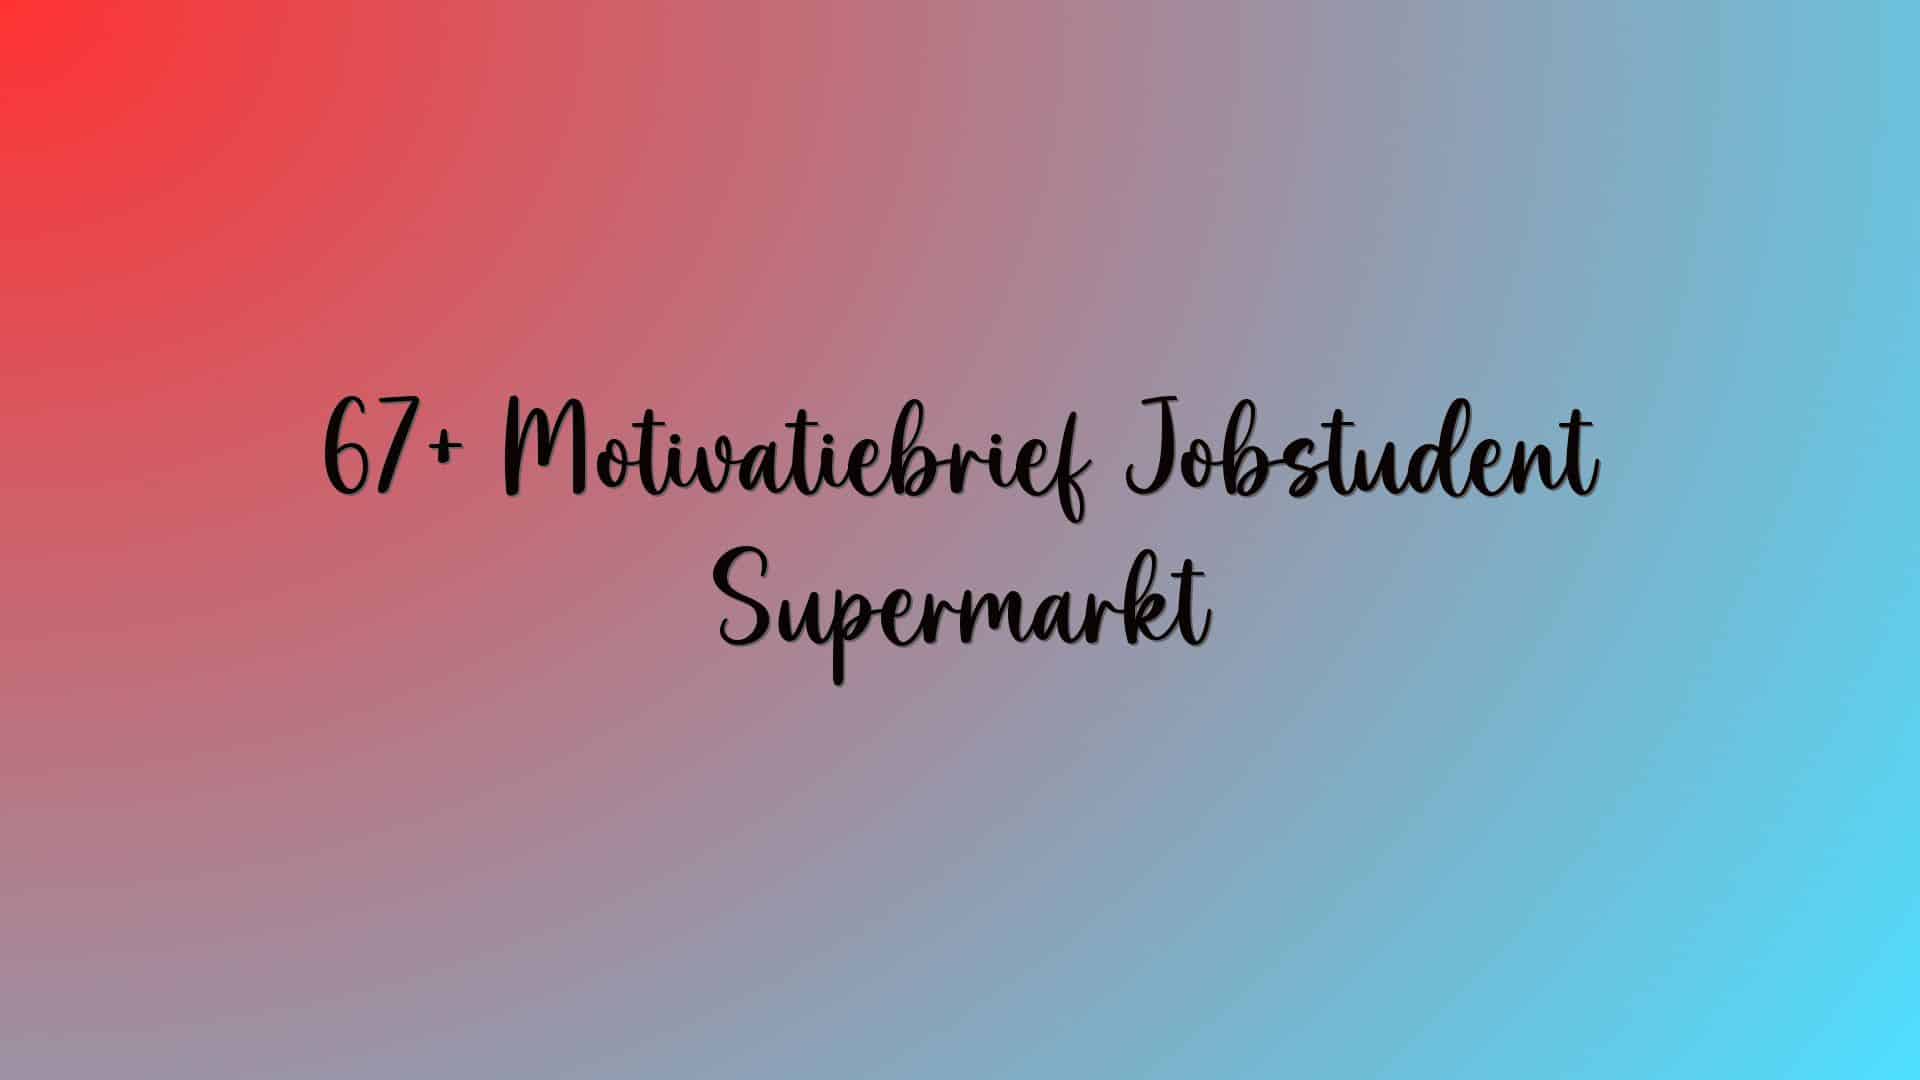 67+ Motivatiebrief Jobstudent Supermarkt